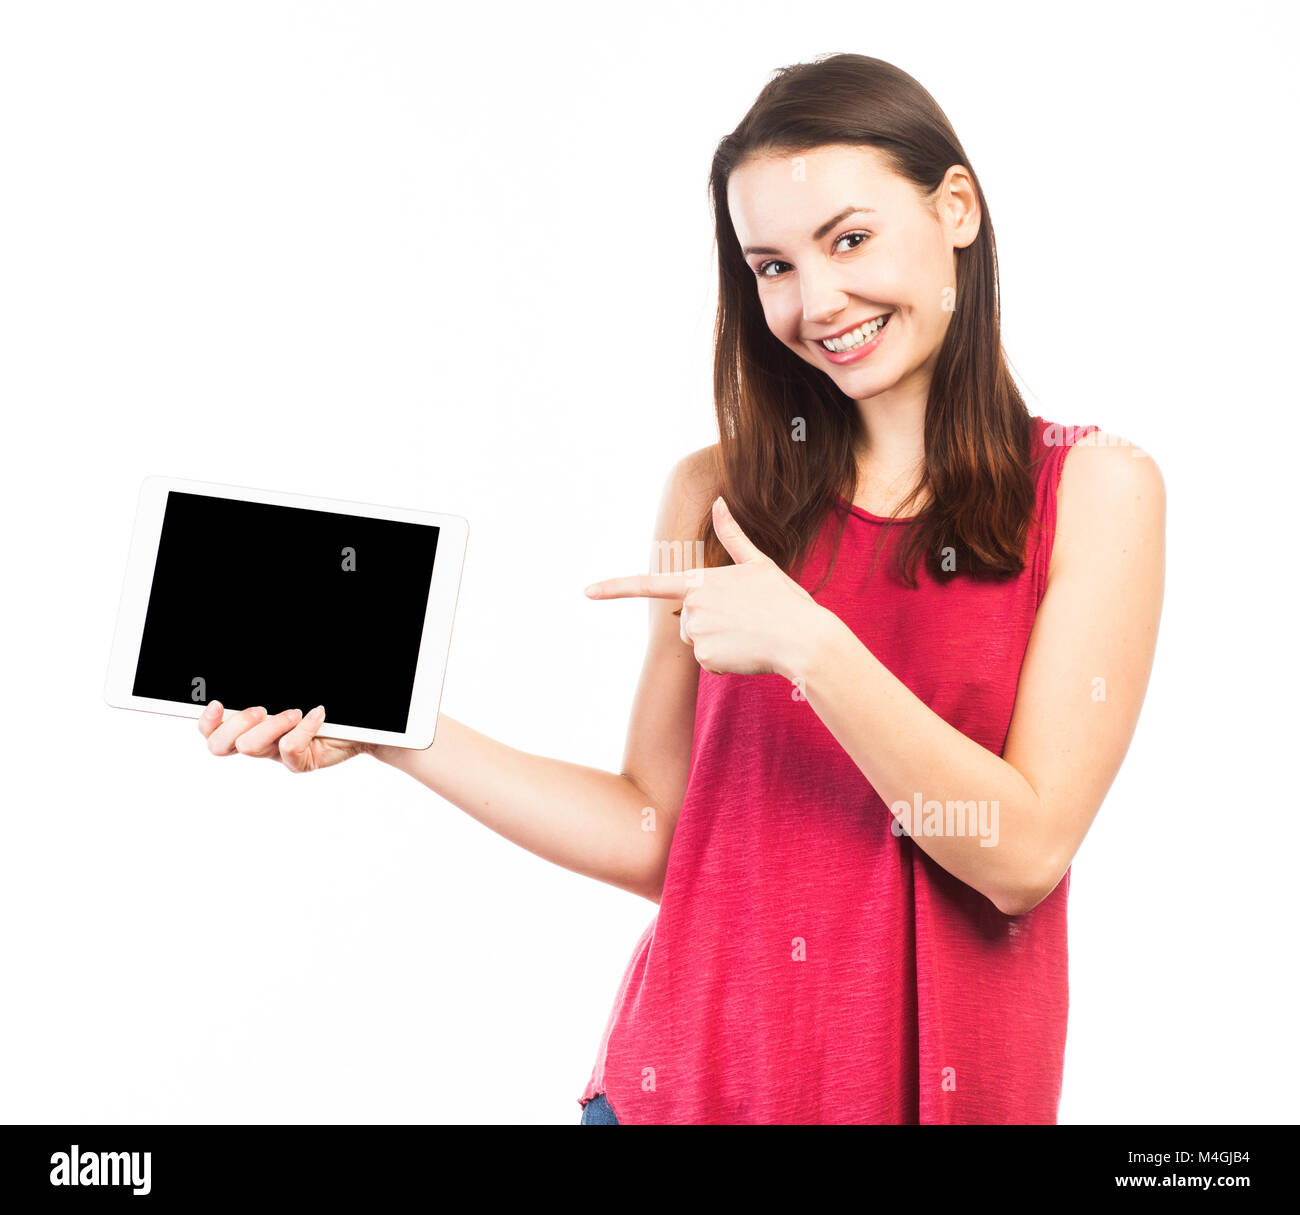 Donna sorridente holding e mostrando la schermata vuota di una tavoletta elettronica, isolato su bianco Foto Stock